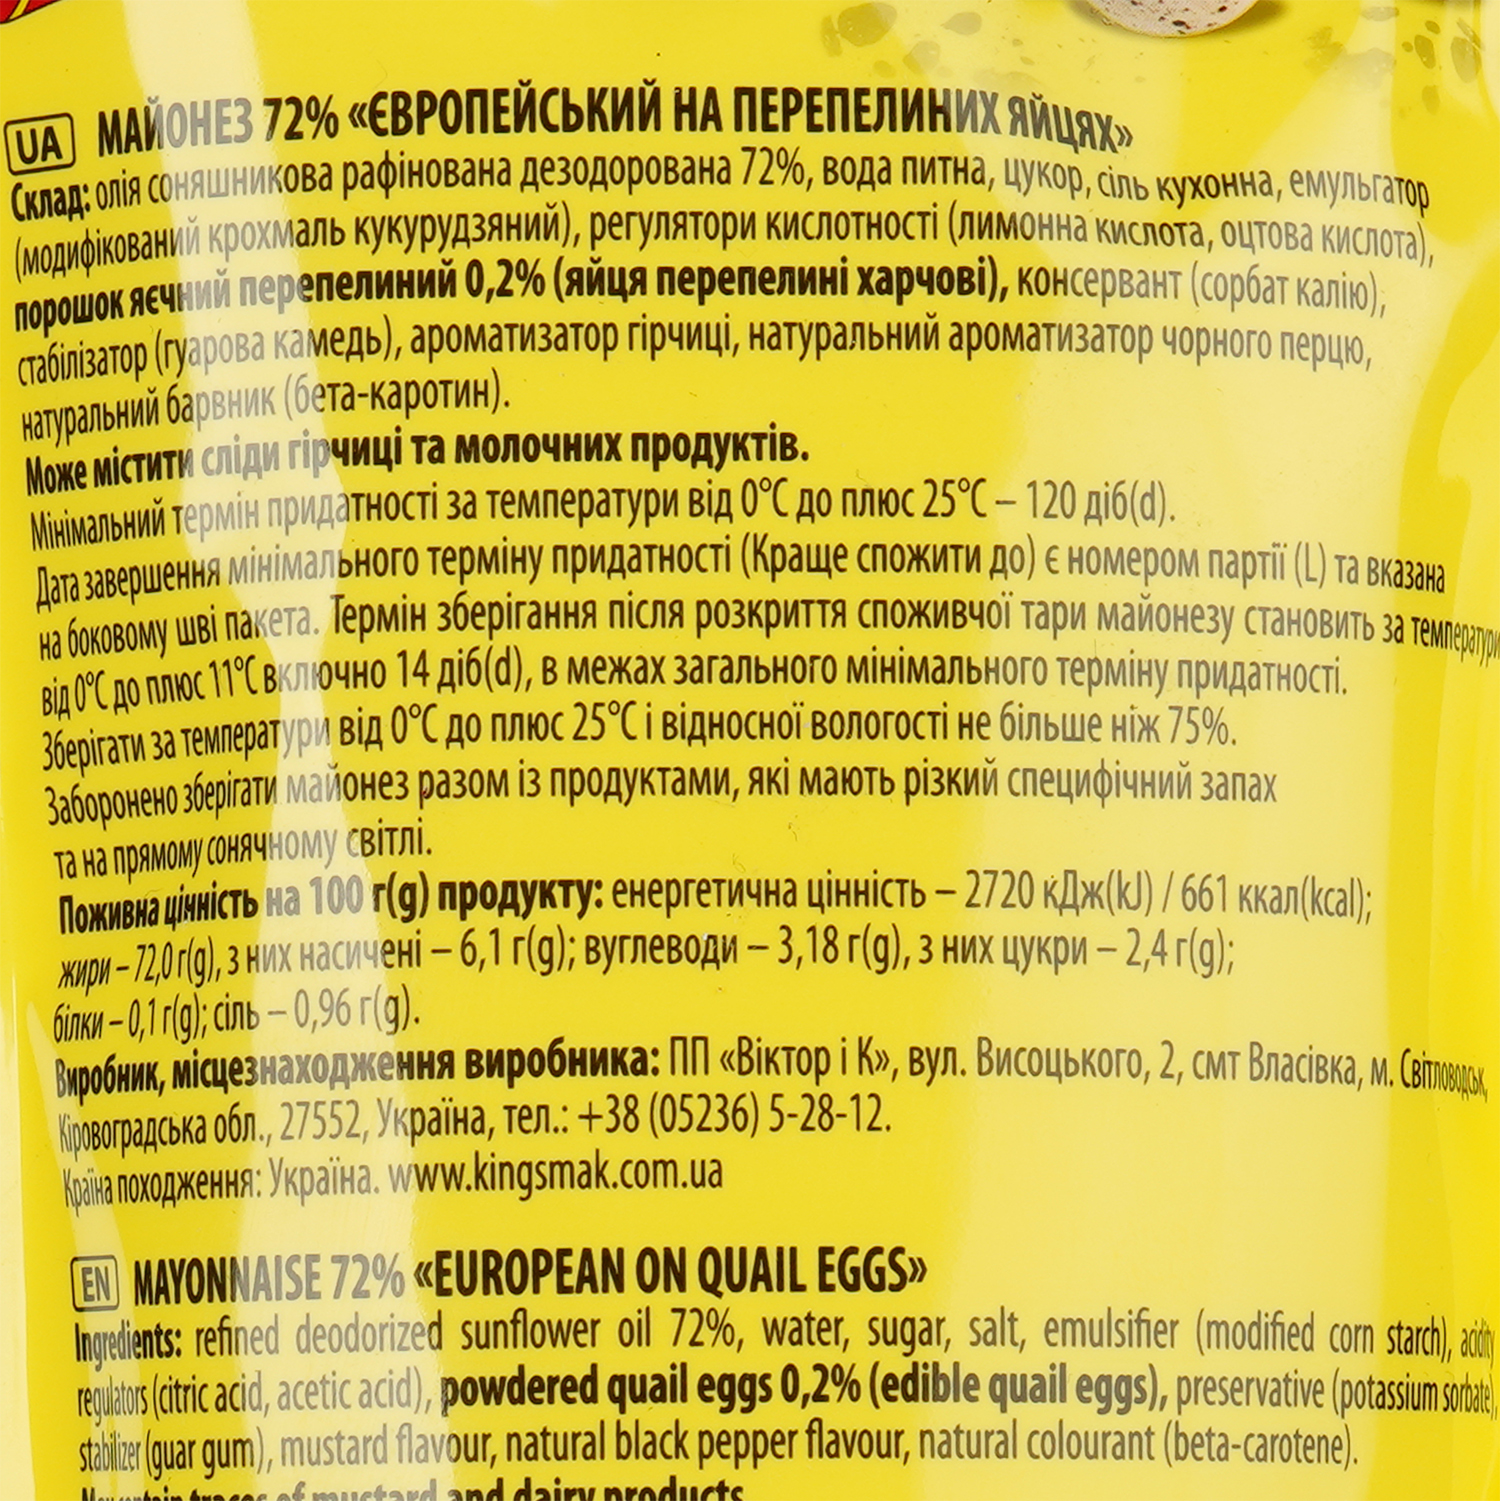 Майонез Королівський смак Європейський на перепелиних яйцях, 72%, 300 г (830166) - фото 3